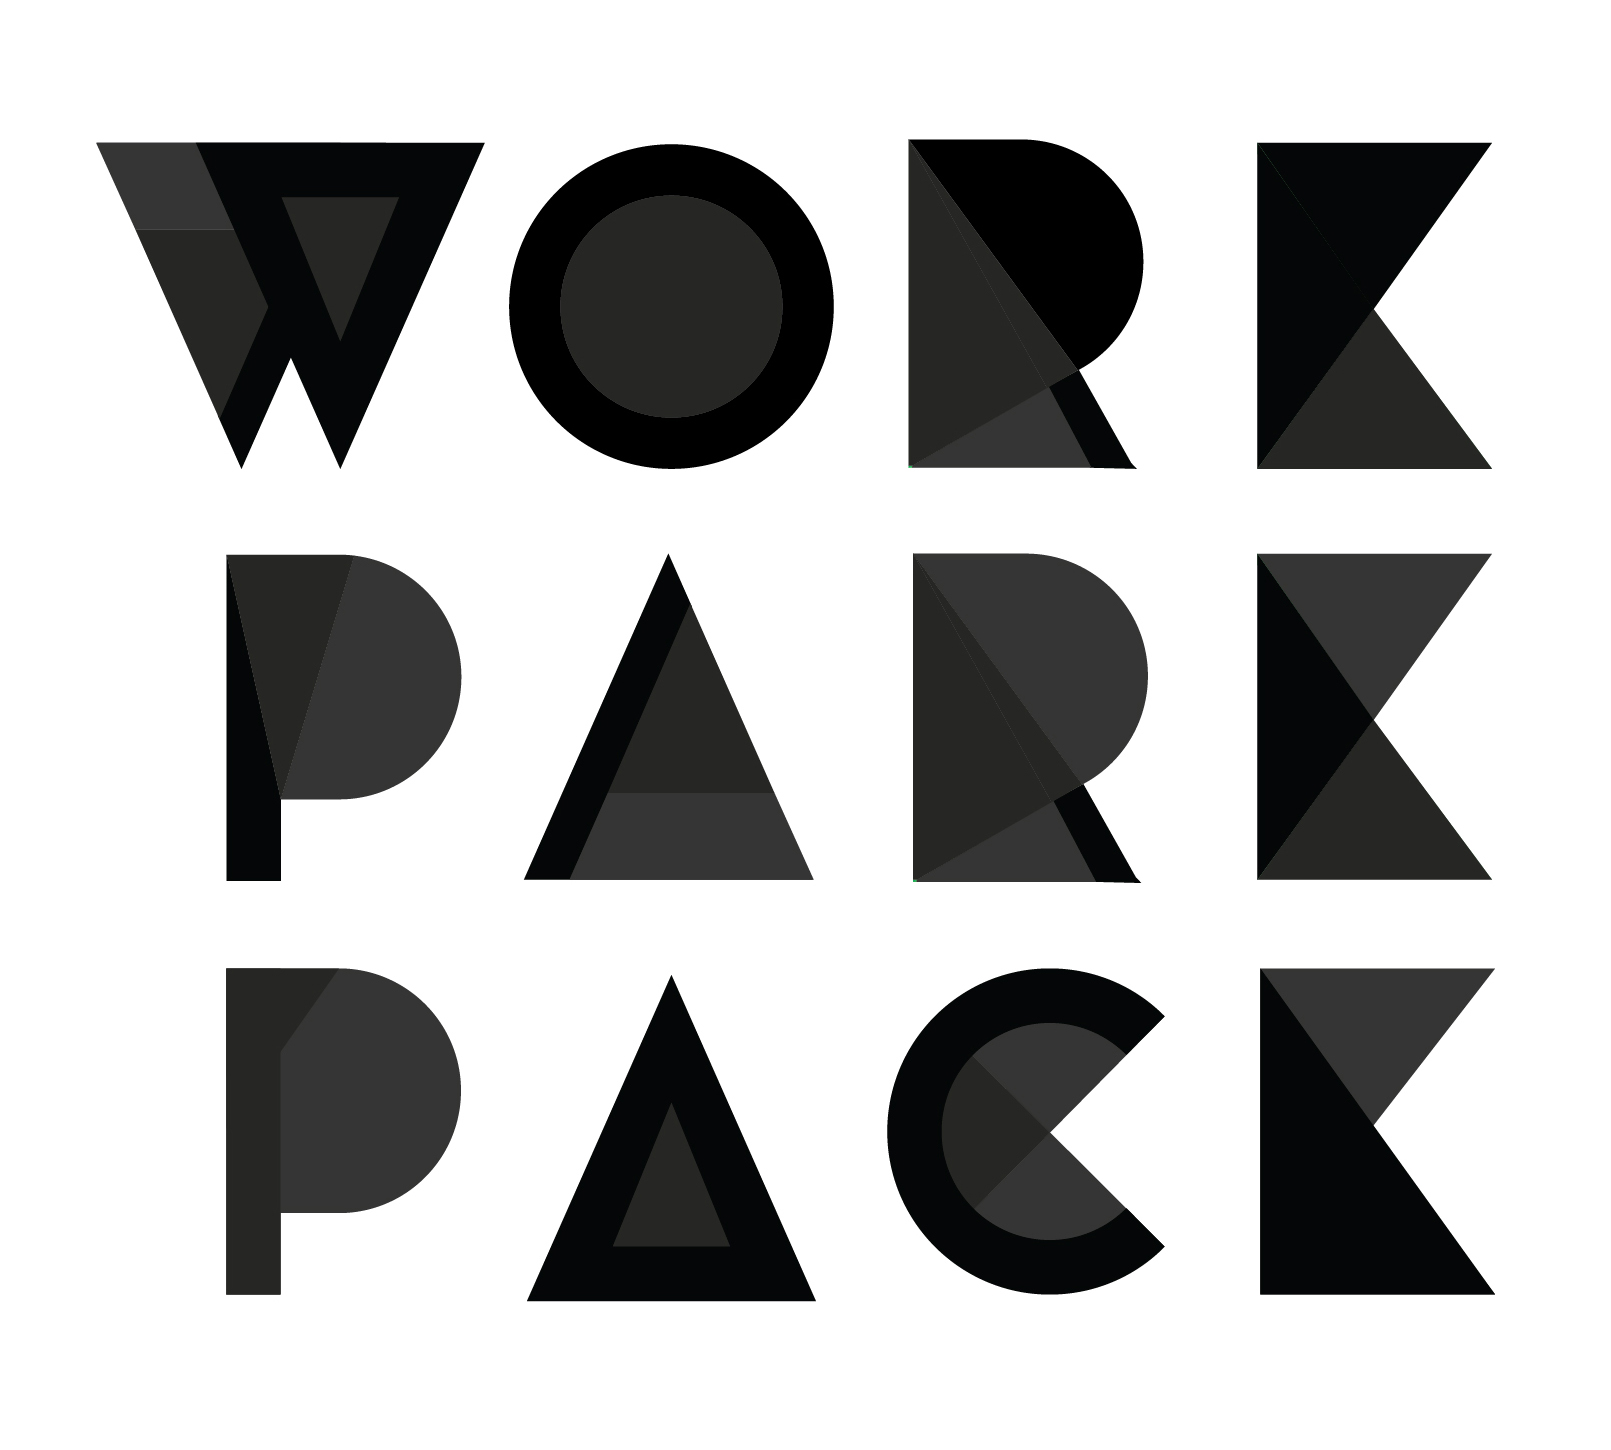 WORK PARK PACKプロジェクトについて